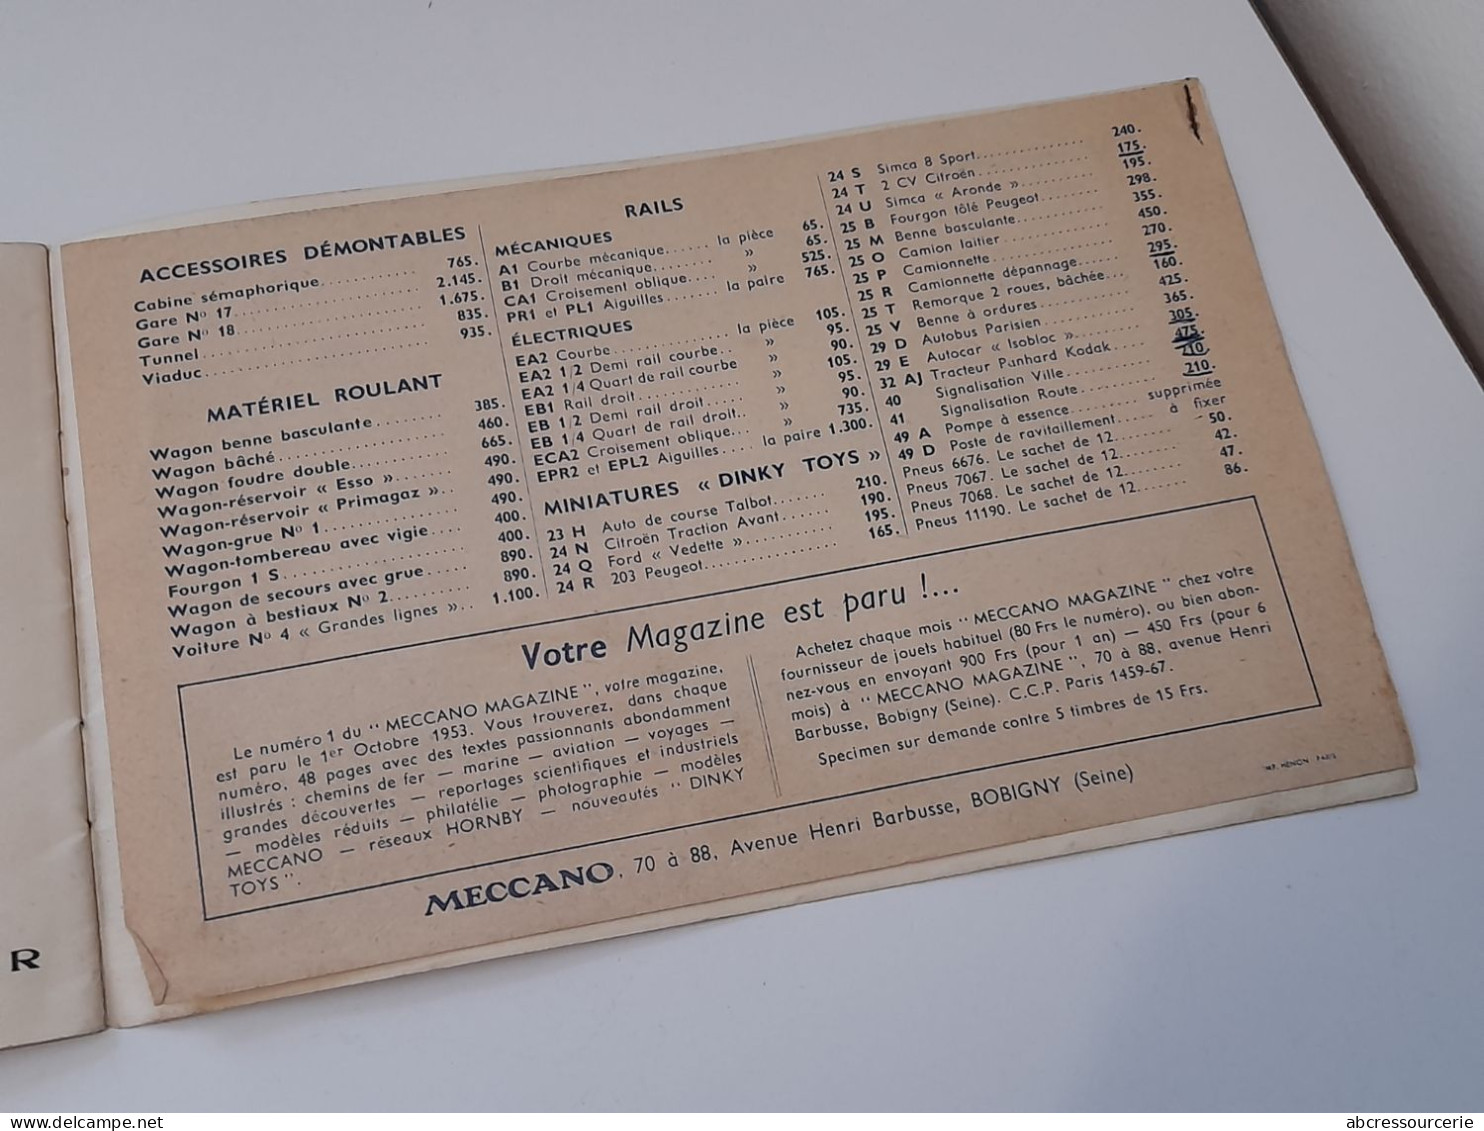 Ancien Catalogue Meccano Trains Hornby Et Dinky Toys 1953 Grands Magasins Decré Nantes - Meccano